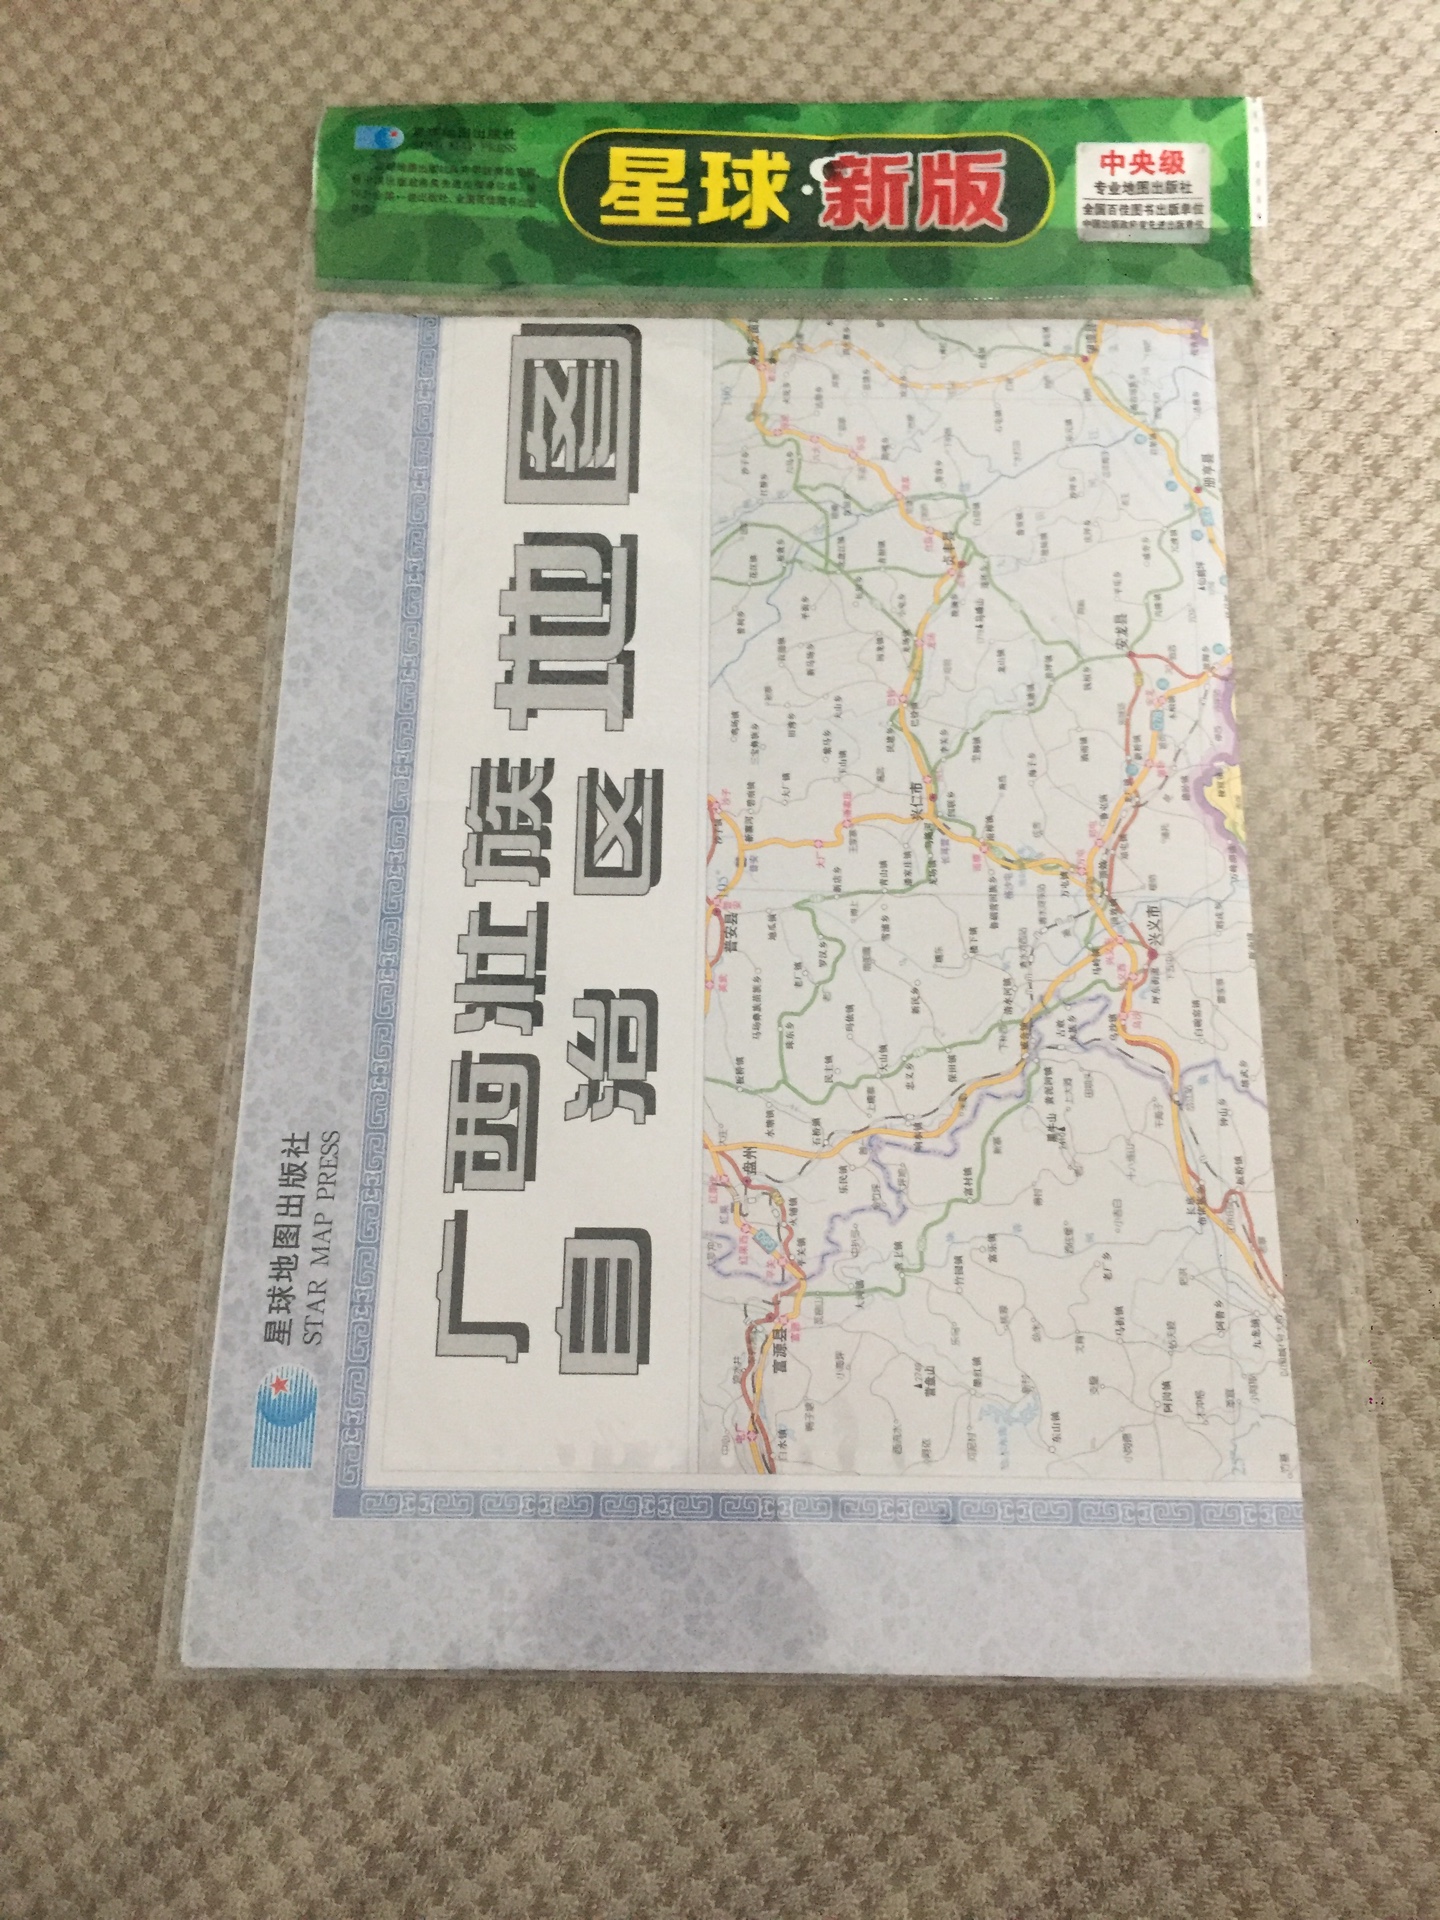 近期准备去黑龙江徒步旅行，备一个纸质地图，方便，直观